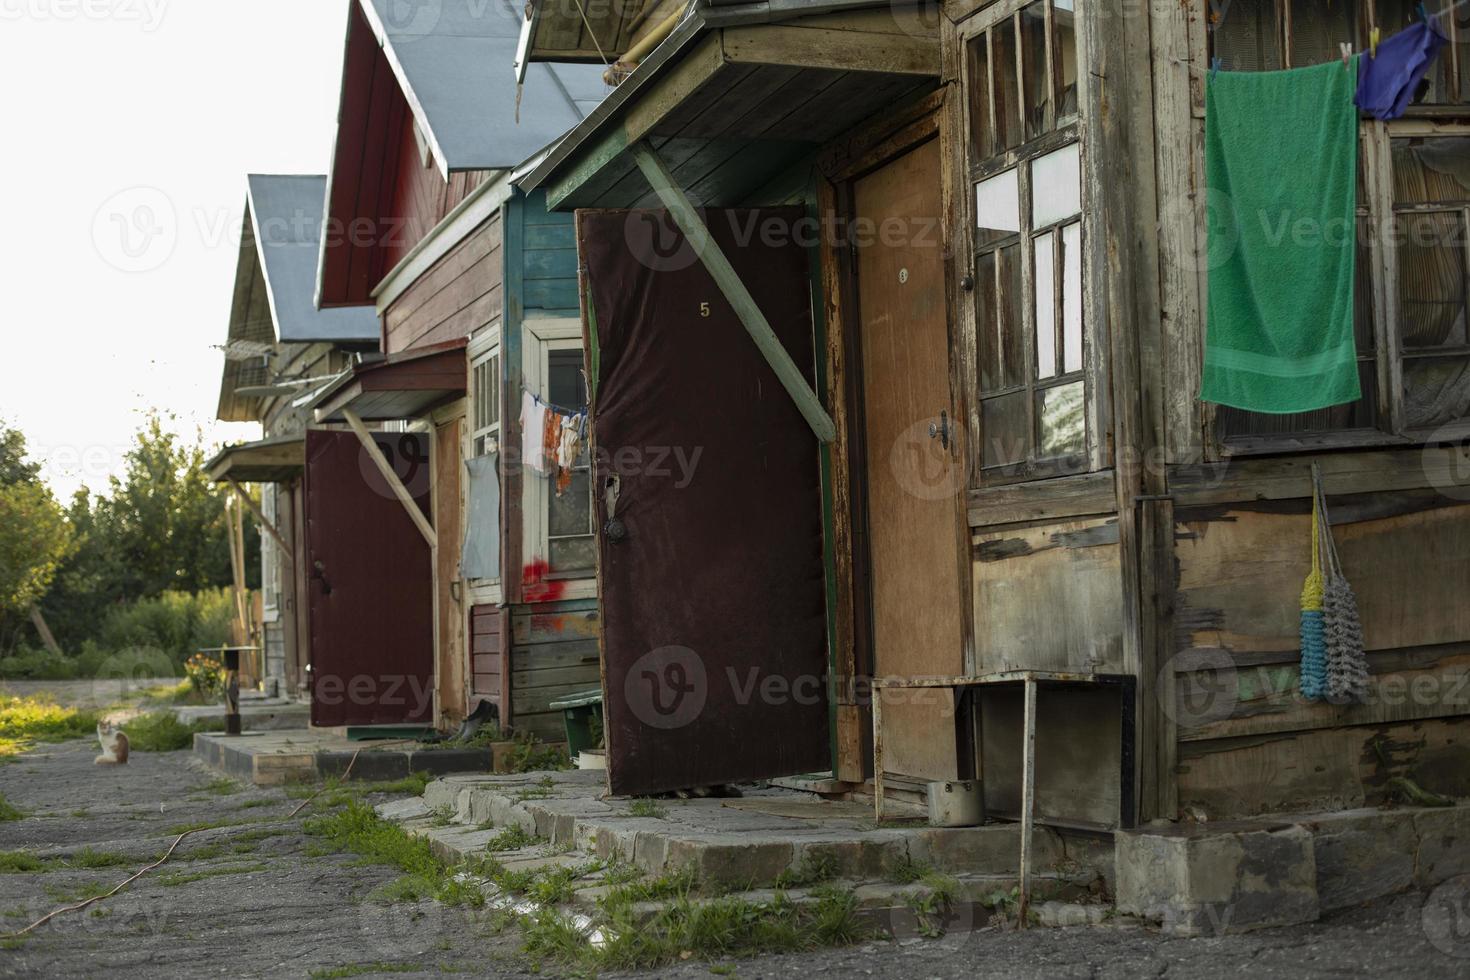 habitação em zona pobre. cabana na aldeia. casa feita de tábuas velhas. bairro pobre da cidade. foto